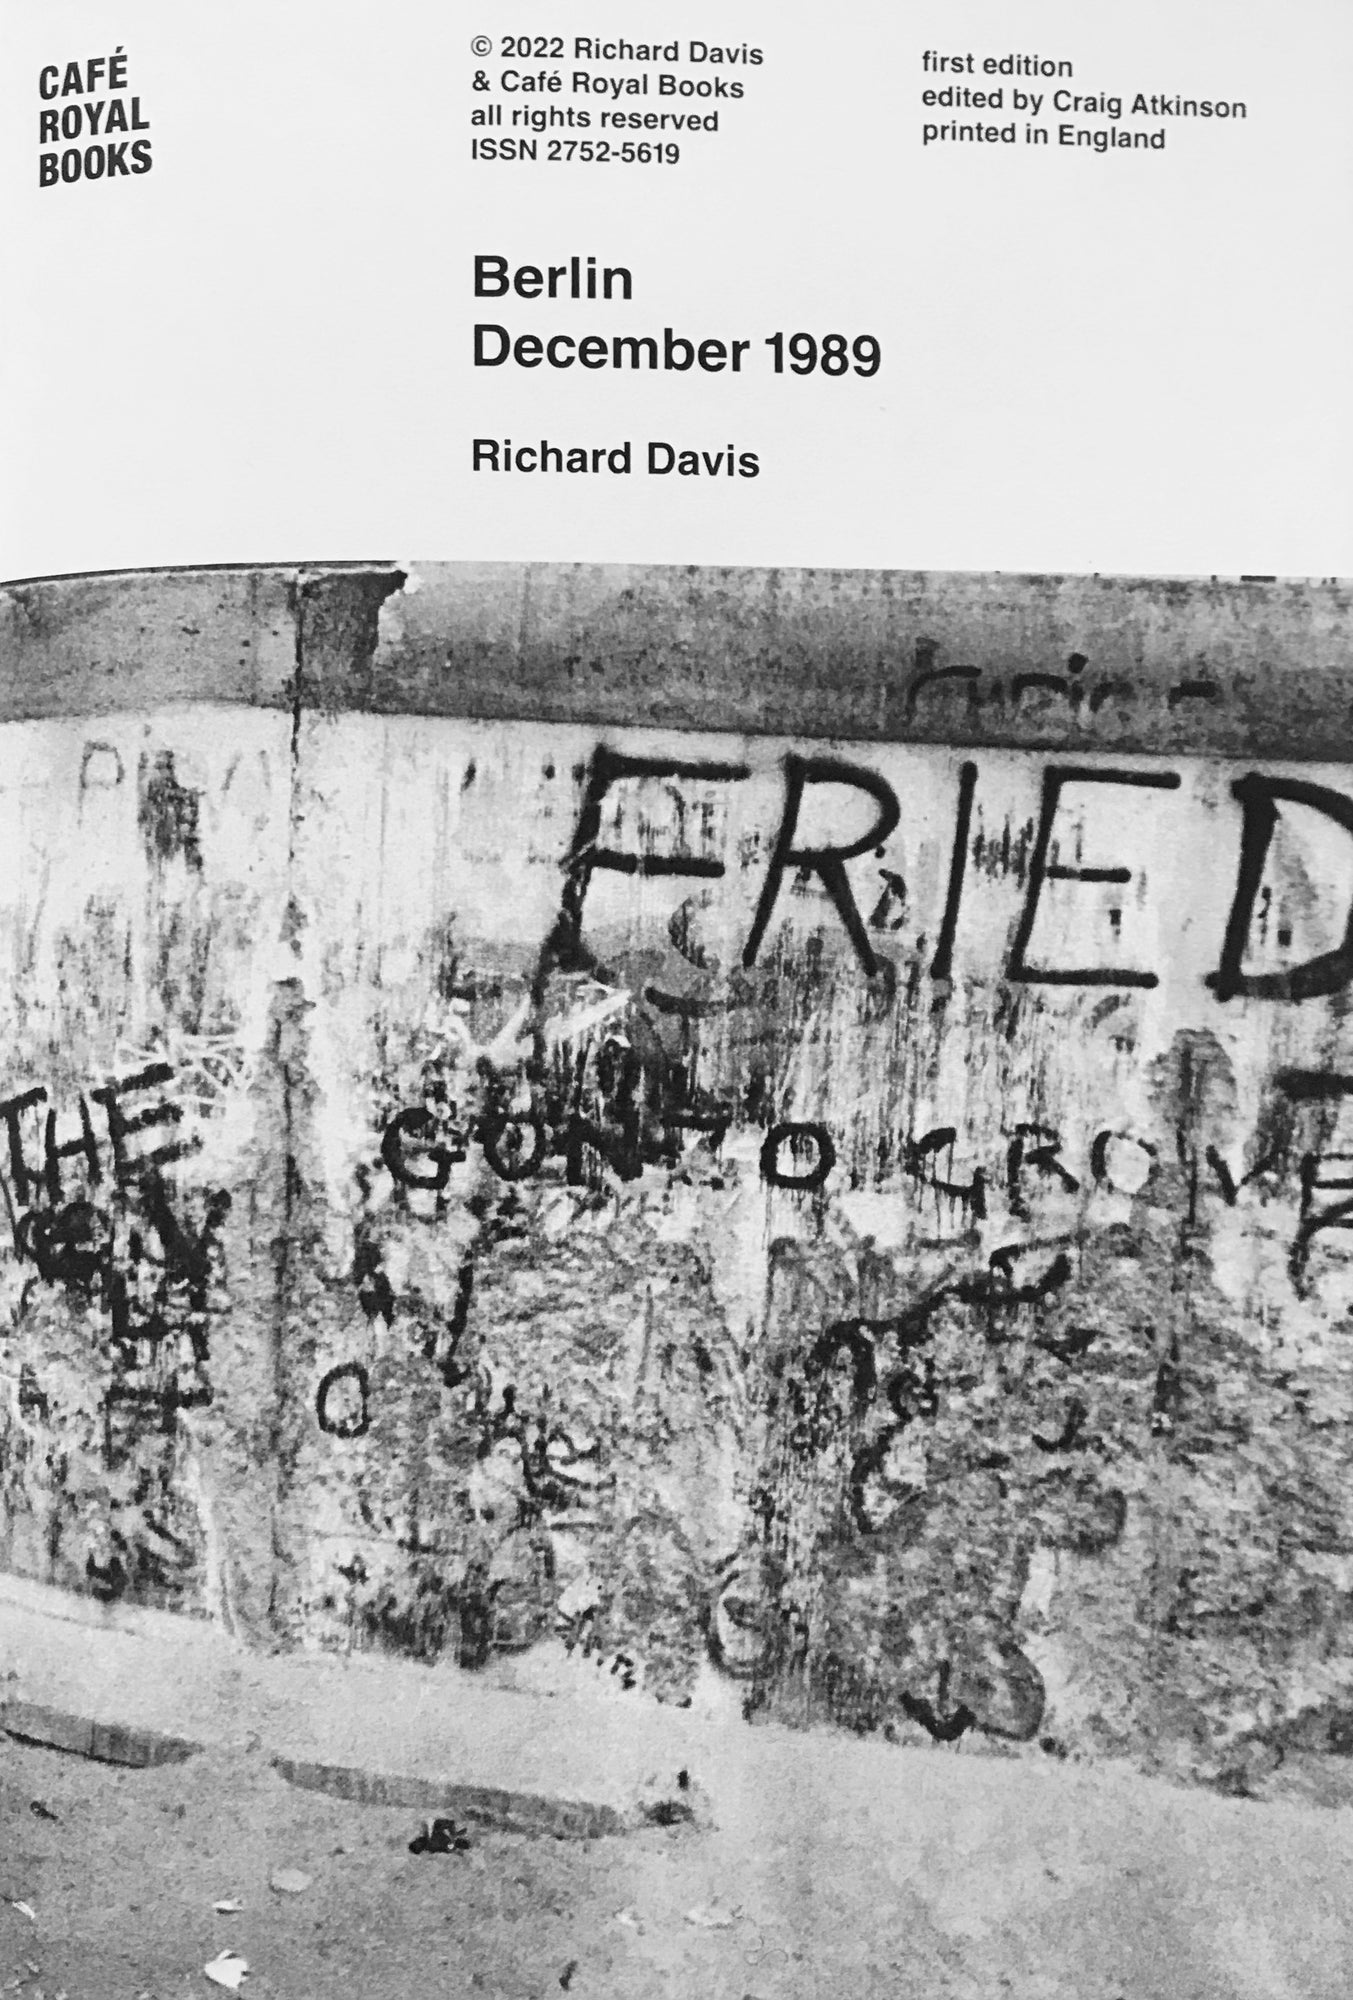 Berlin, December 1989